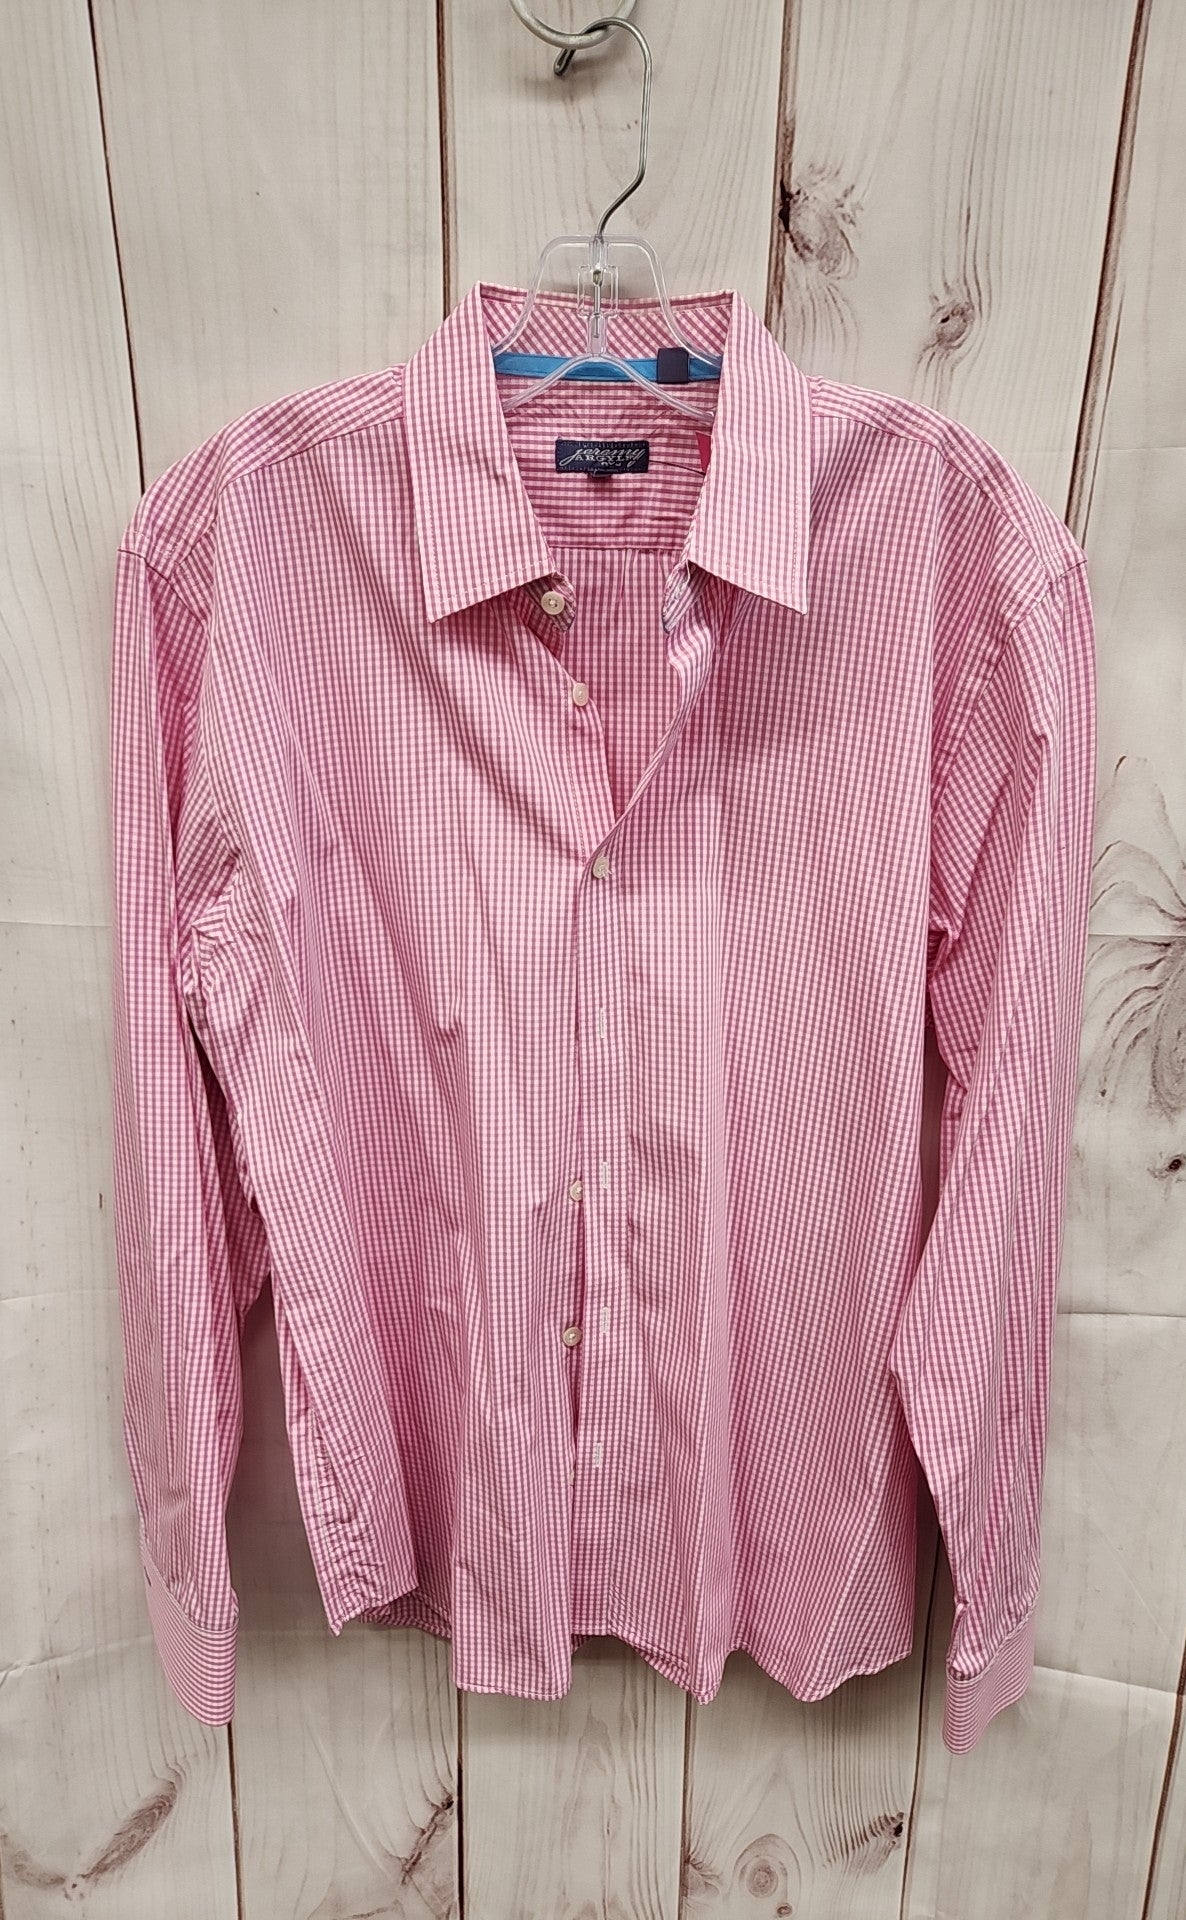 Jeremy Argyle Men's Size L Pink Shirt